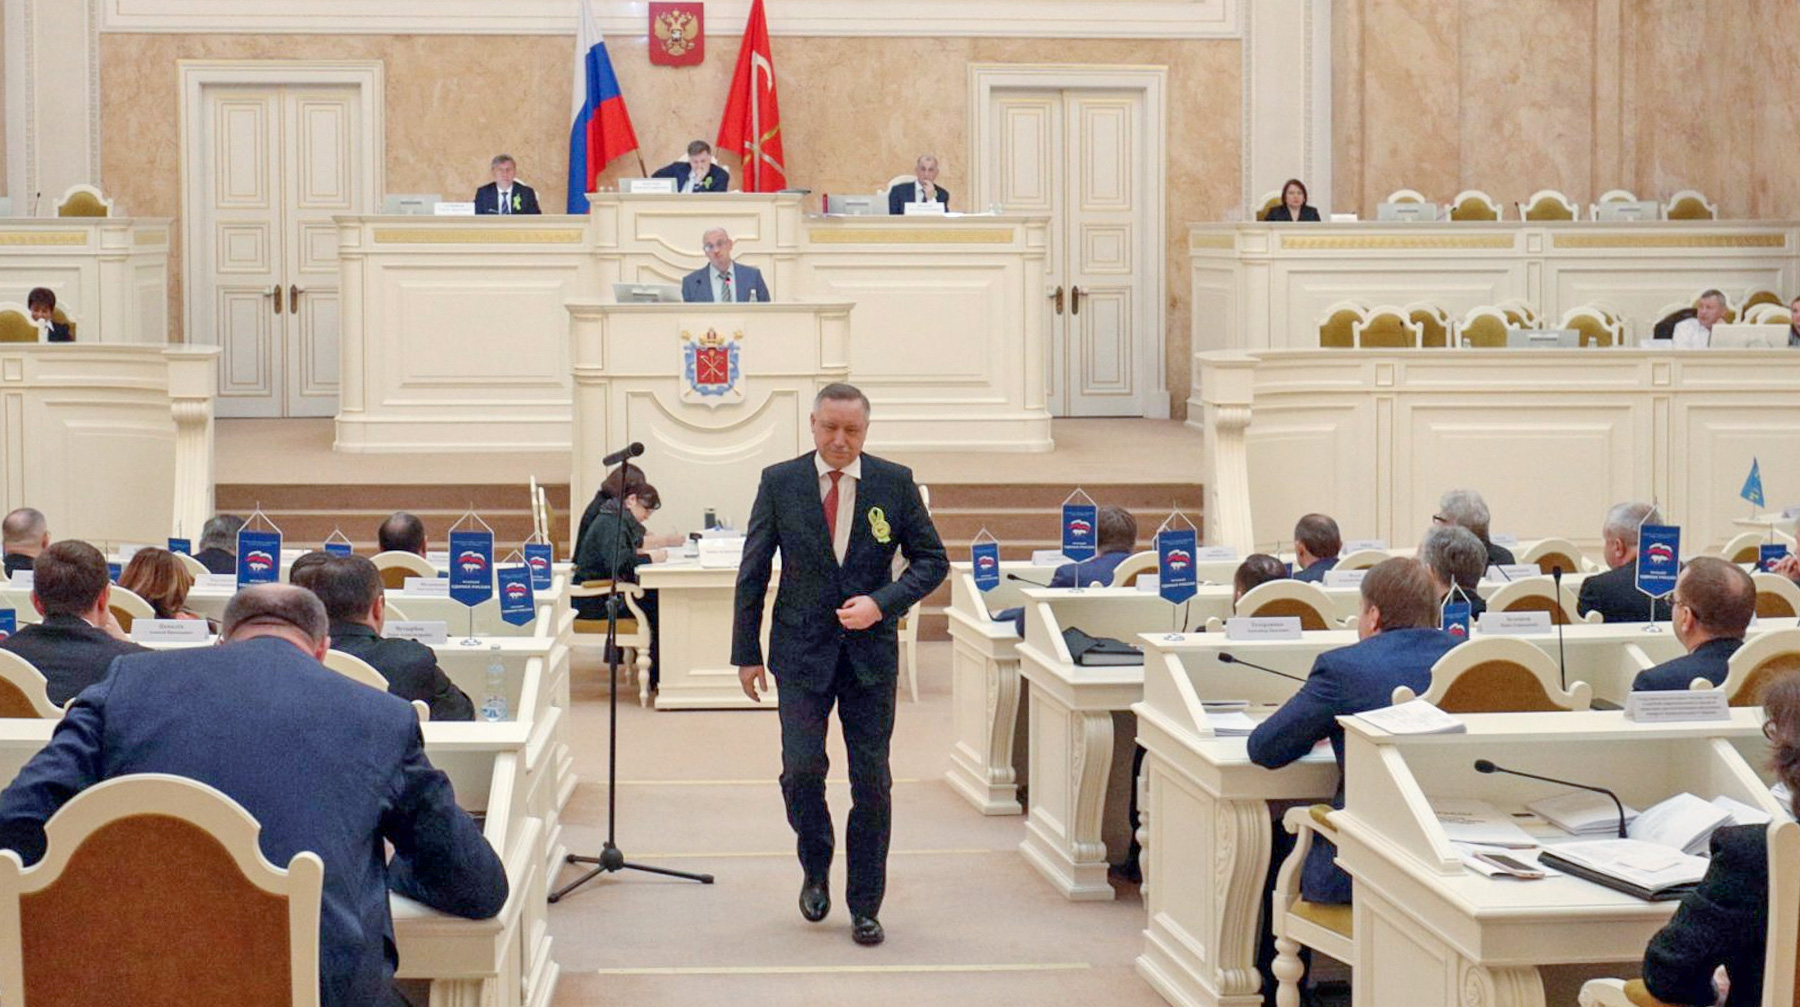 Парламентарий посоветовал врио губернатора Санкт-Петербурга поучиться у президента умению выслушать критику undefined